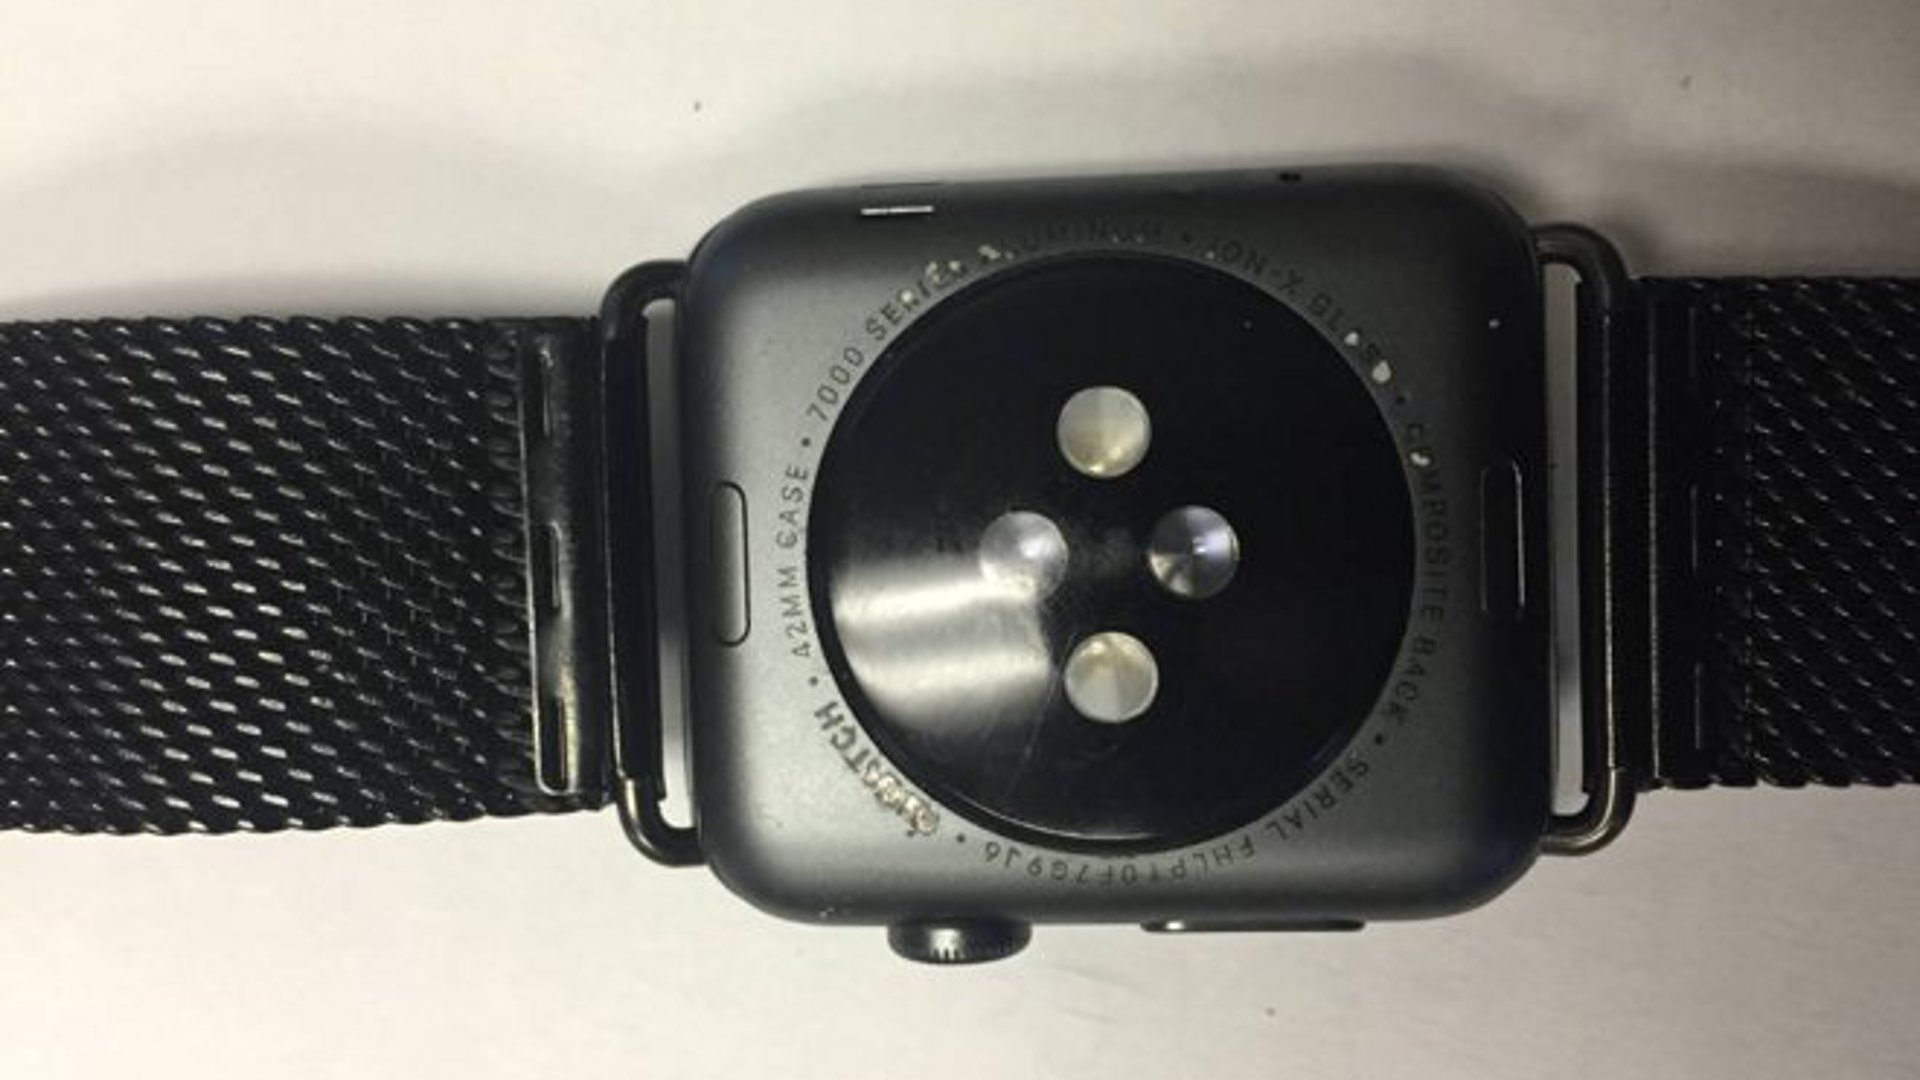 Apple Watch - Wear & Tear Issues